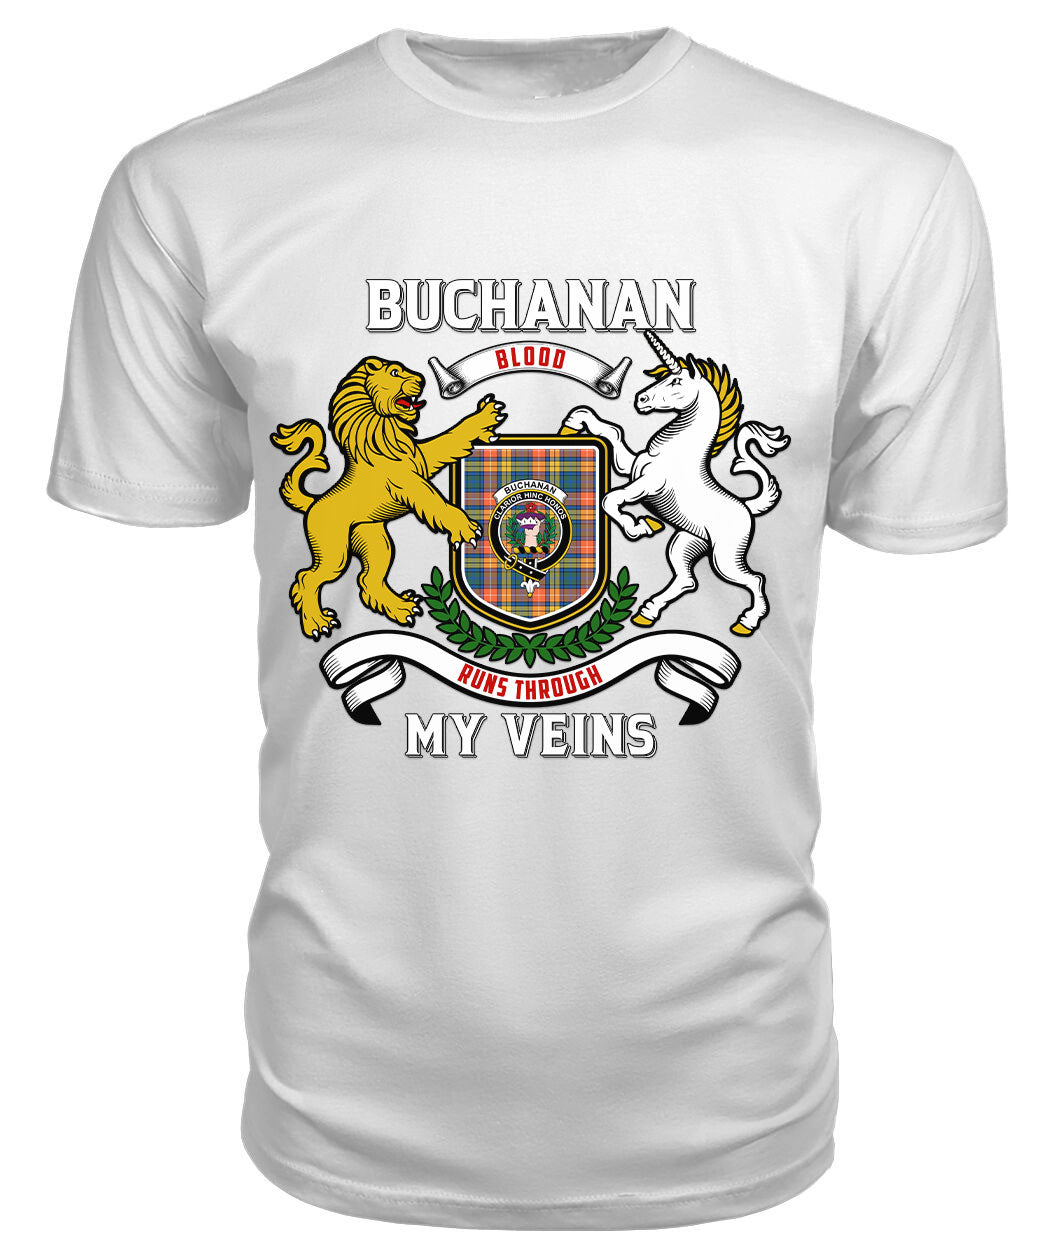 Buchanan Ancient Tartan Crest 2D T-shirt - Blood Runs Through My Veins Style